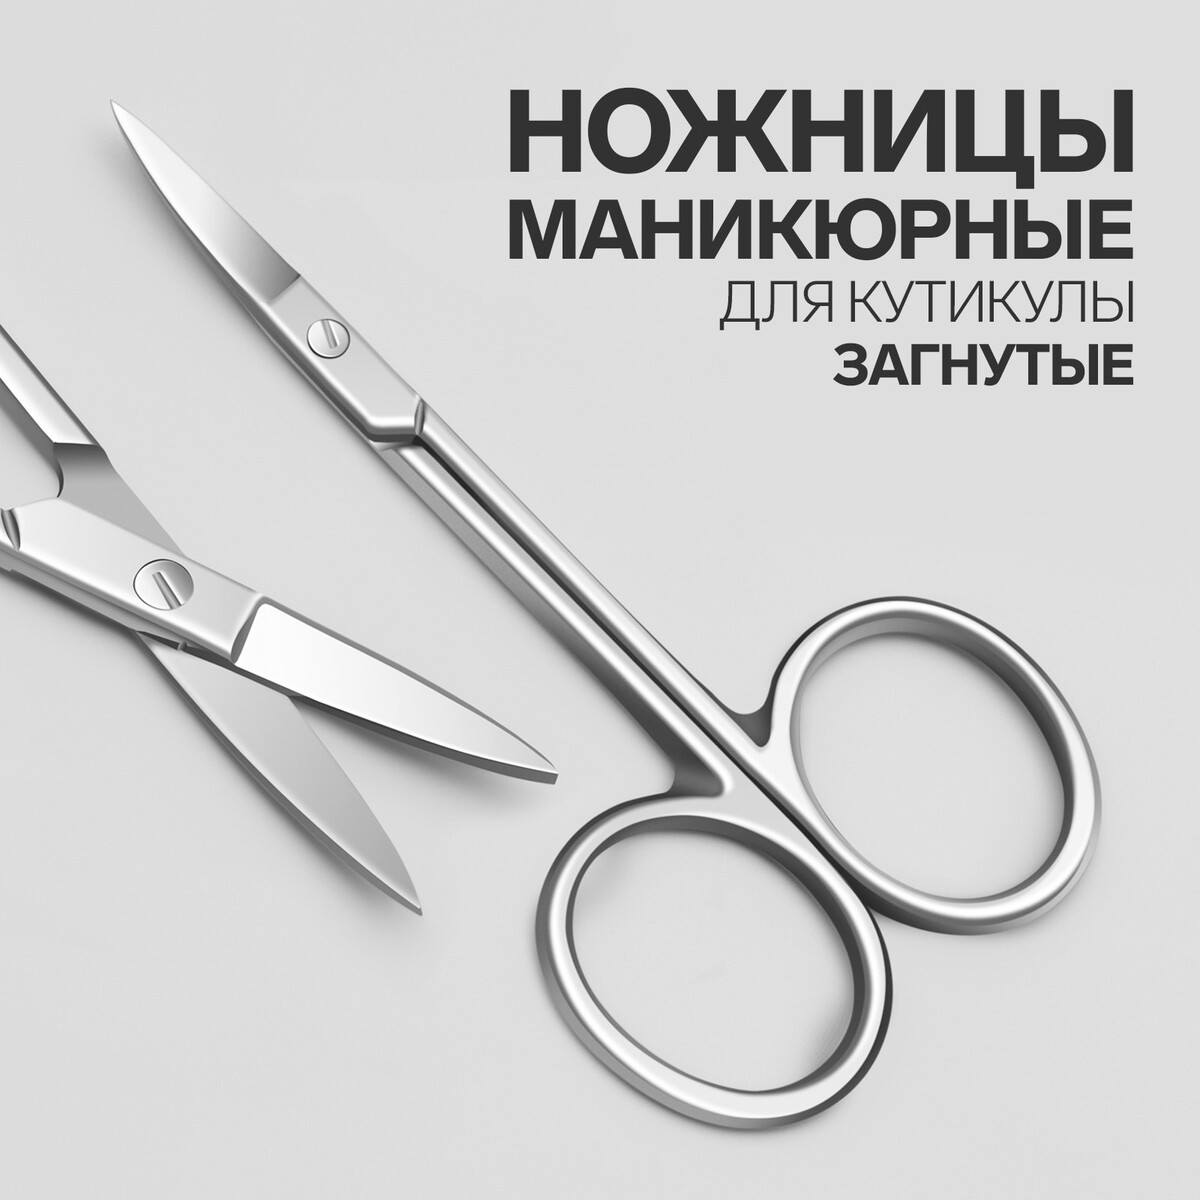 Ножницы маникюрные для кутикулы, загнутые, узкие, 9,3 см, цвет серебристый ножницы маникюрные загнутые 9 см серебристый